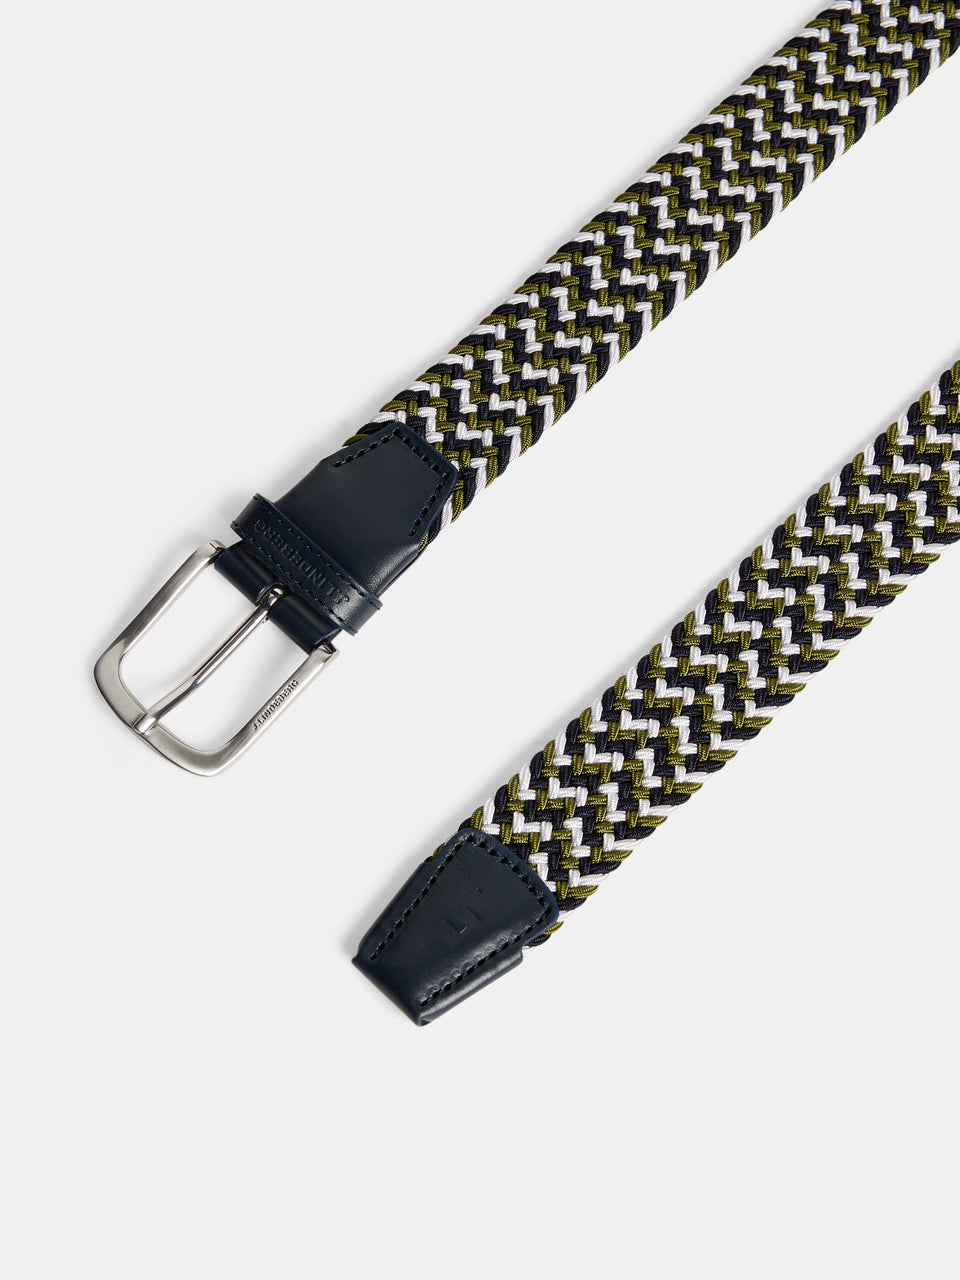 Bridger Leather Belt / Black – J.Lindeberg